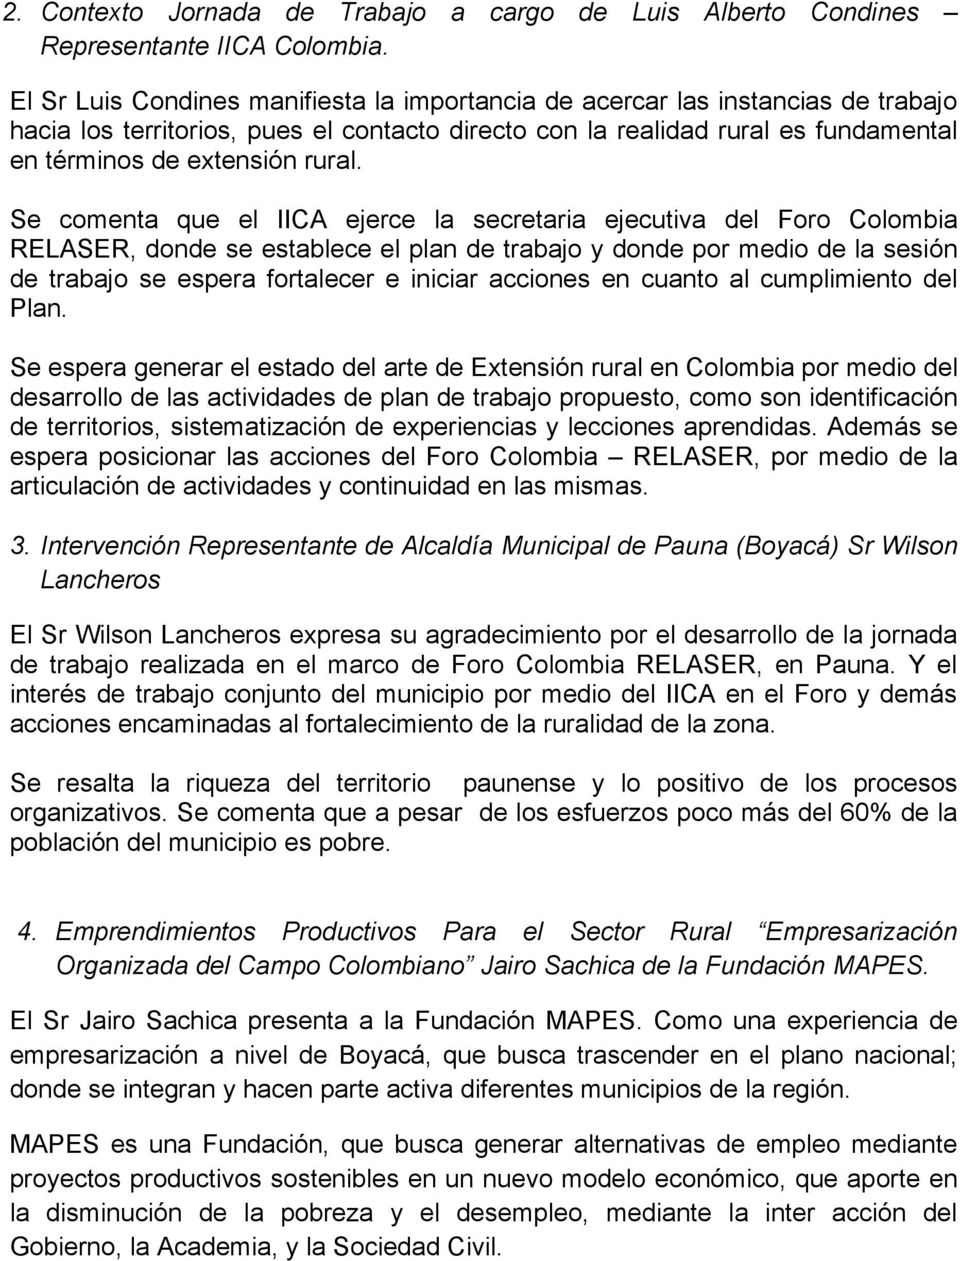 Se comenta que el IICA ejerce la secretaria ejecutiva del Foro Colombia RELASER, donde se establece el plan de trabajo y donde por medio de la sesión de trabajo se espera fortalecer e iniciar